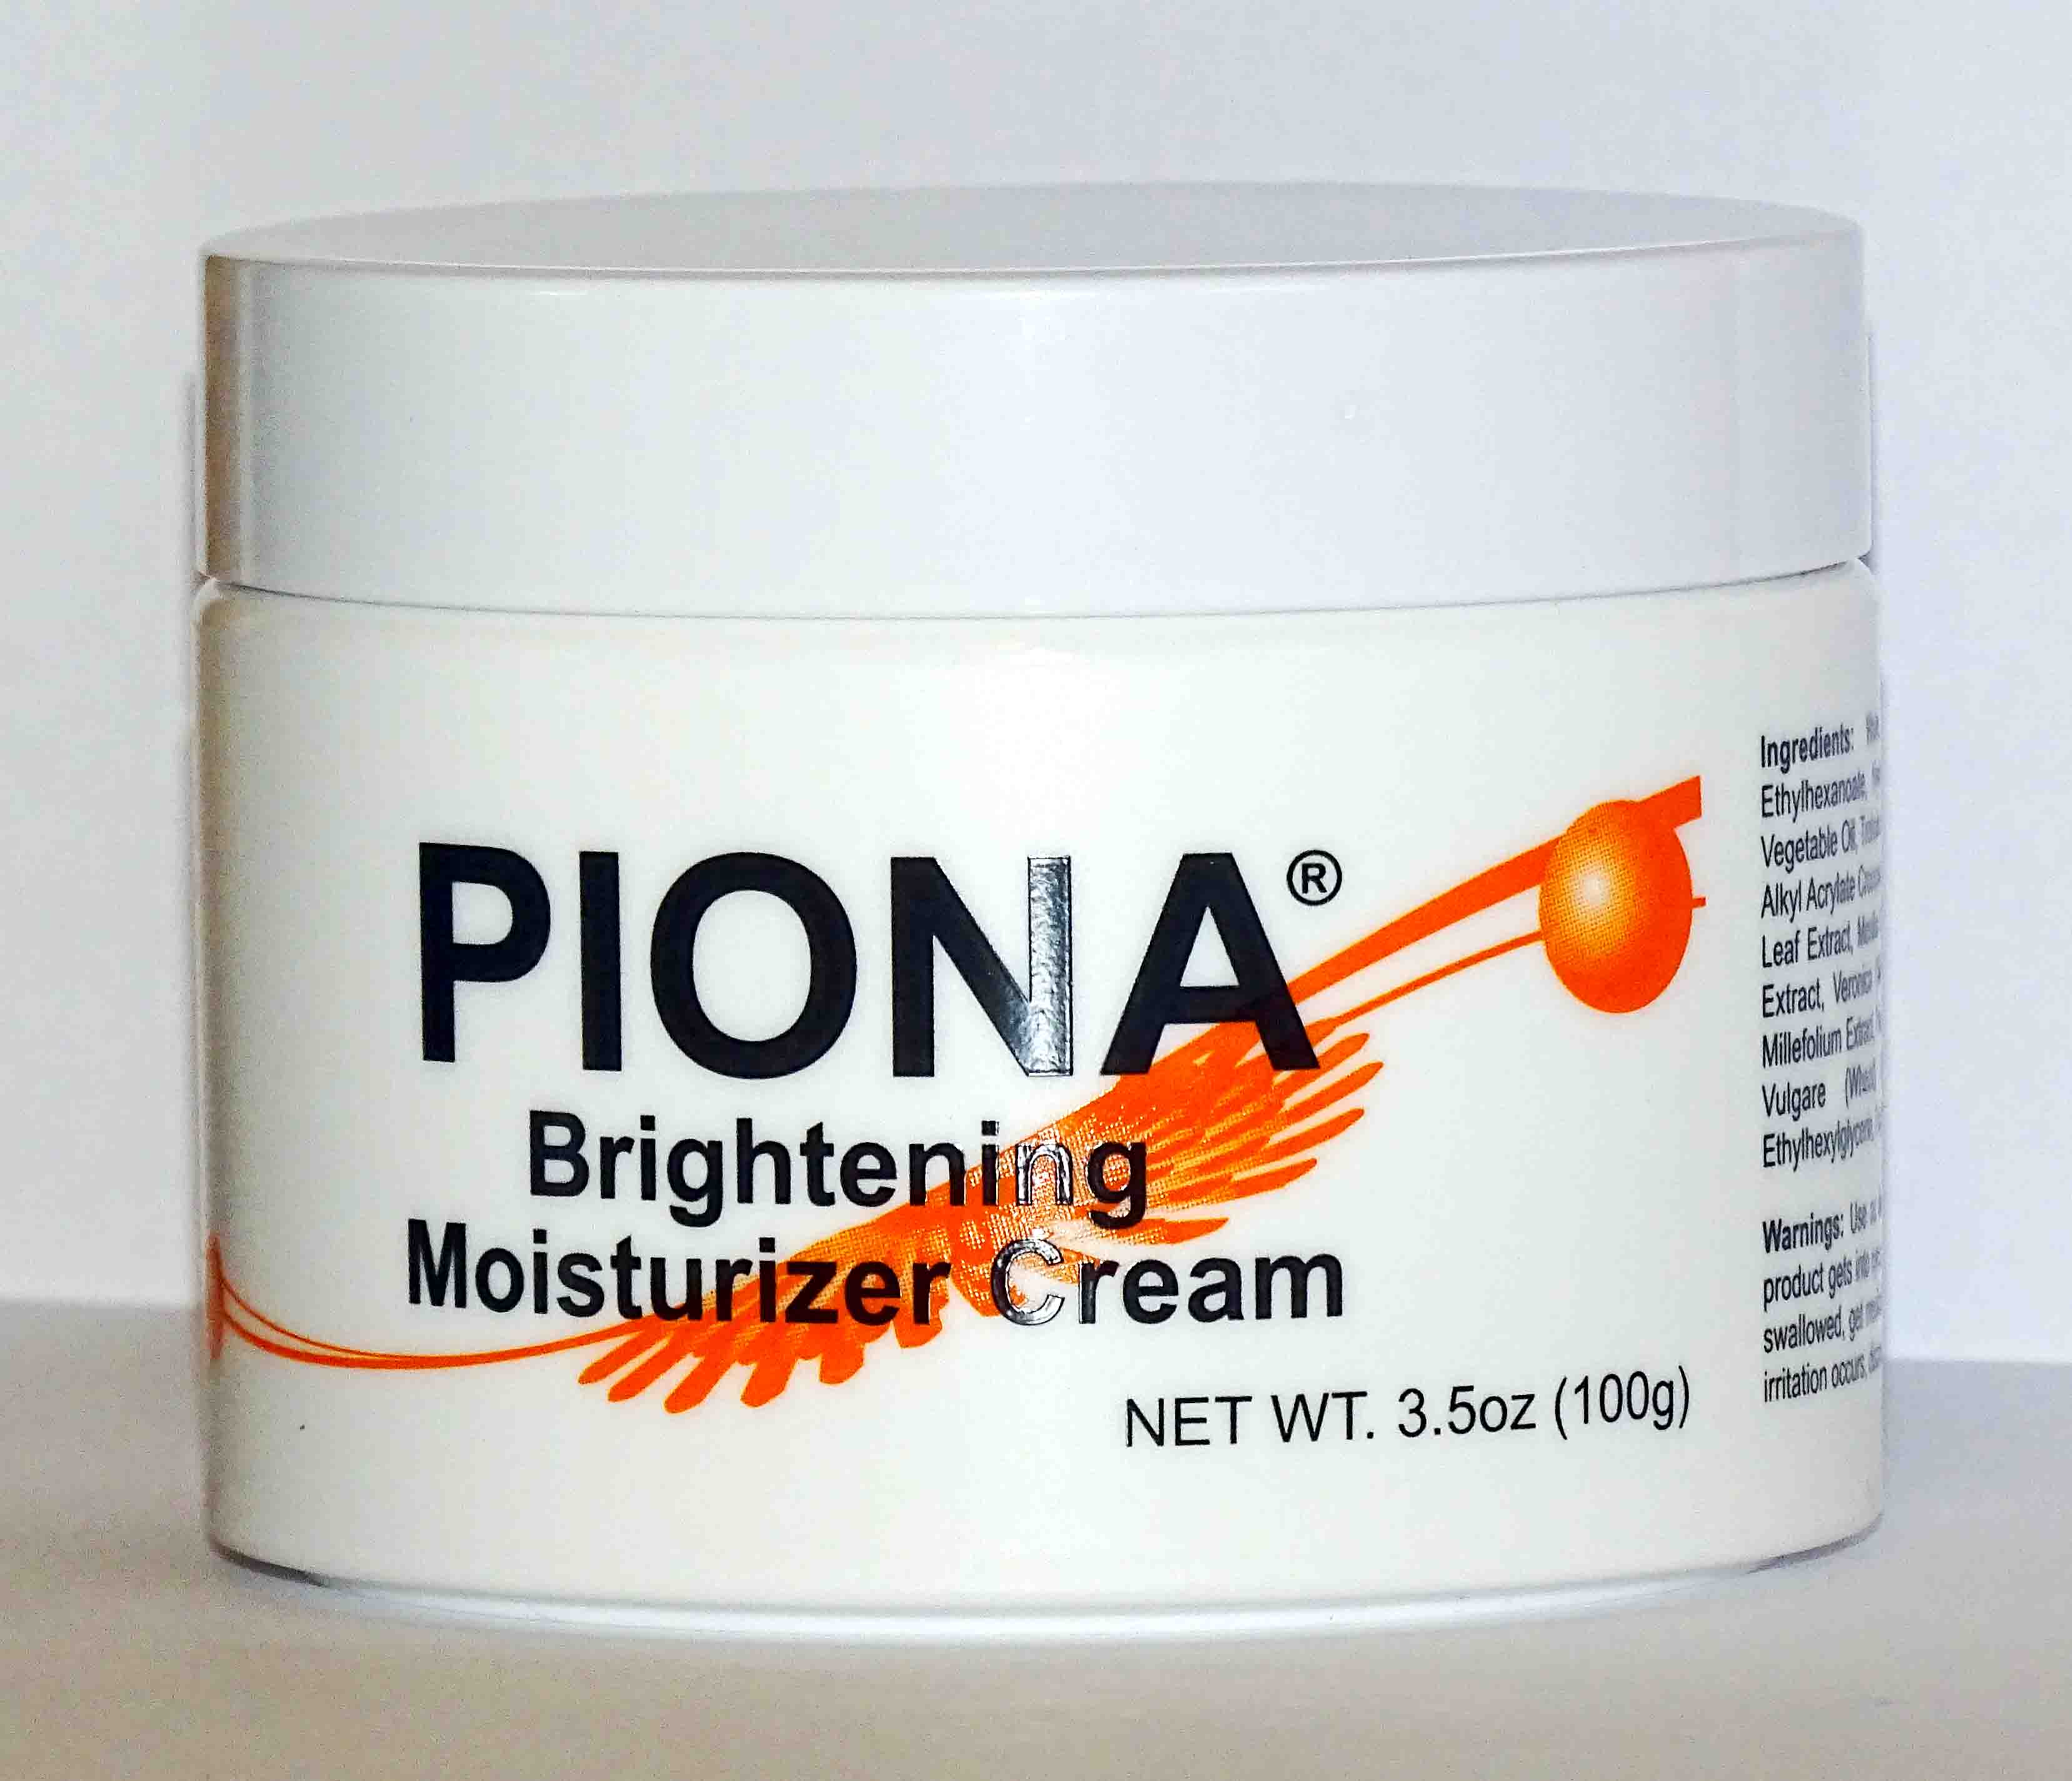 Piona Brightening Moisturizer cream